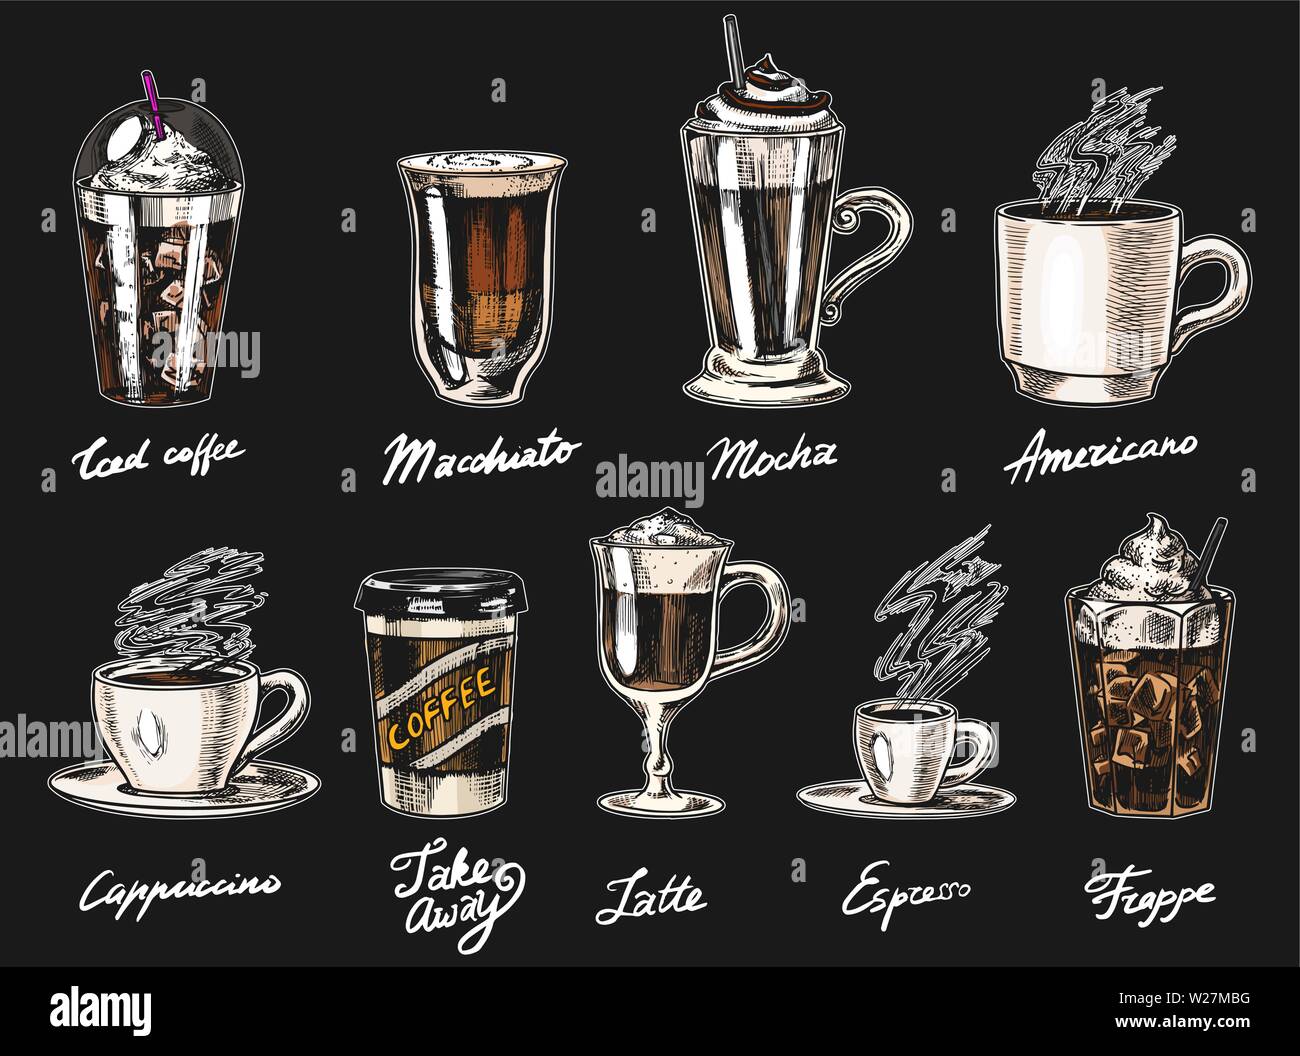 Eingestellt von Tassen Kaffee im Vintage Style. Nehmen Sie Cappuccino und Glace, Espresso und Latte, Mokka und Americano, Frappe in einem Glas. Hand gezeichnet Stock Vektor